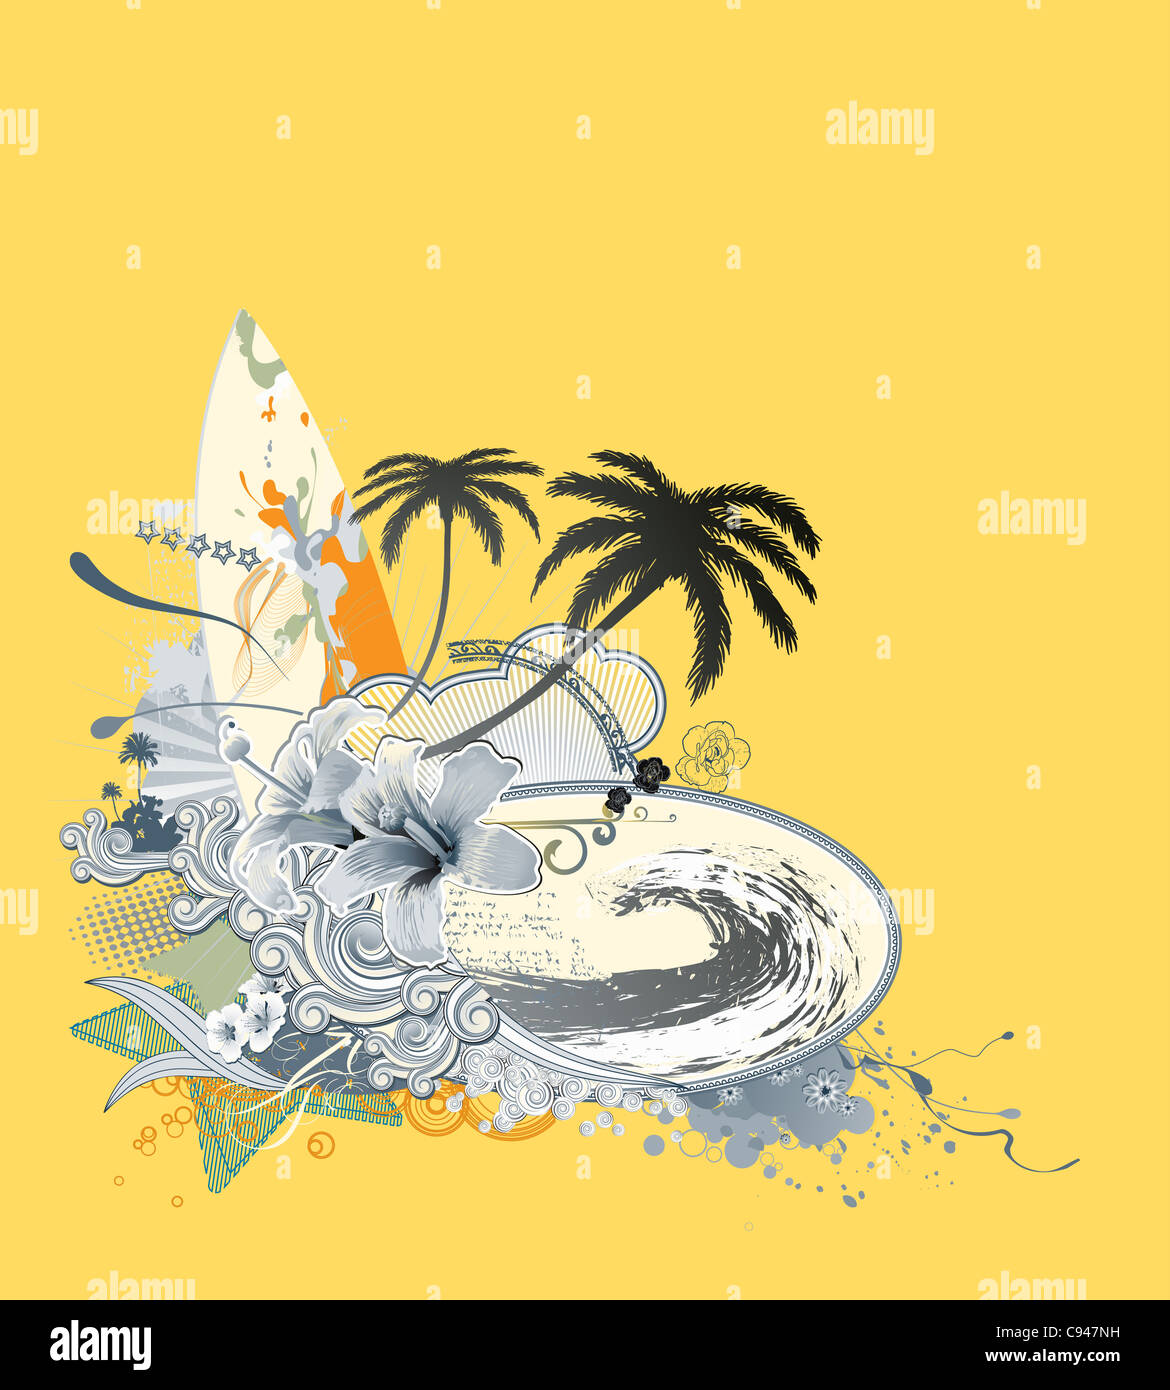 Illustrazione della composizione d'estate con la tavola da surf sul big wave, hibiscus, palme silhouette e ricci strisce retrò Foto Stock